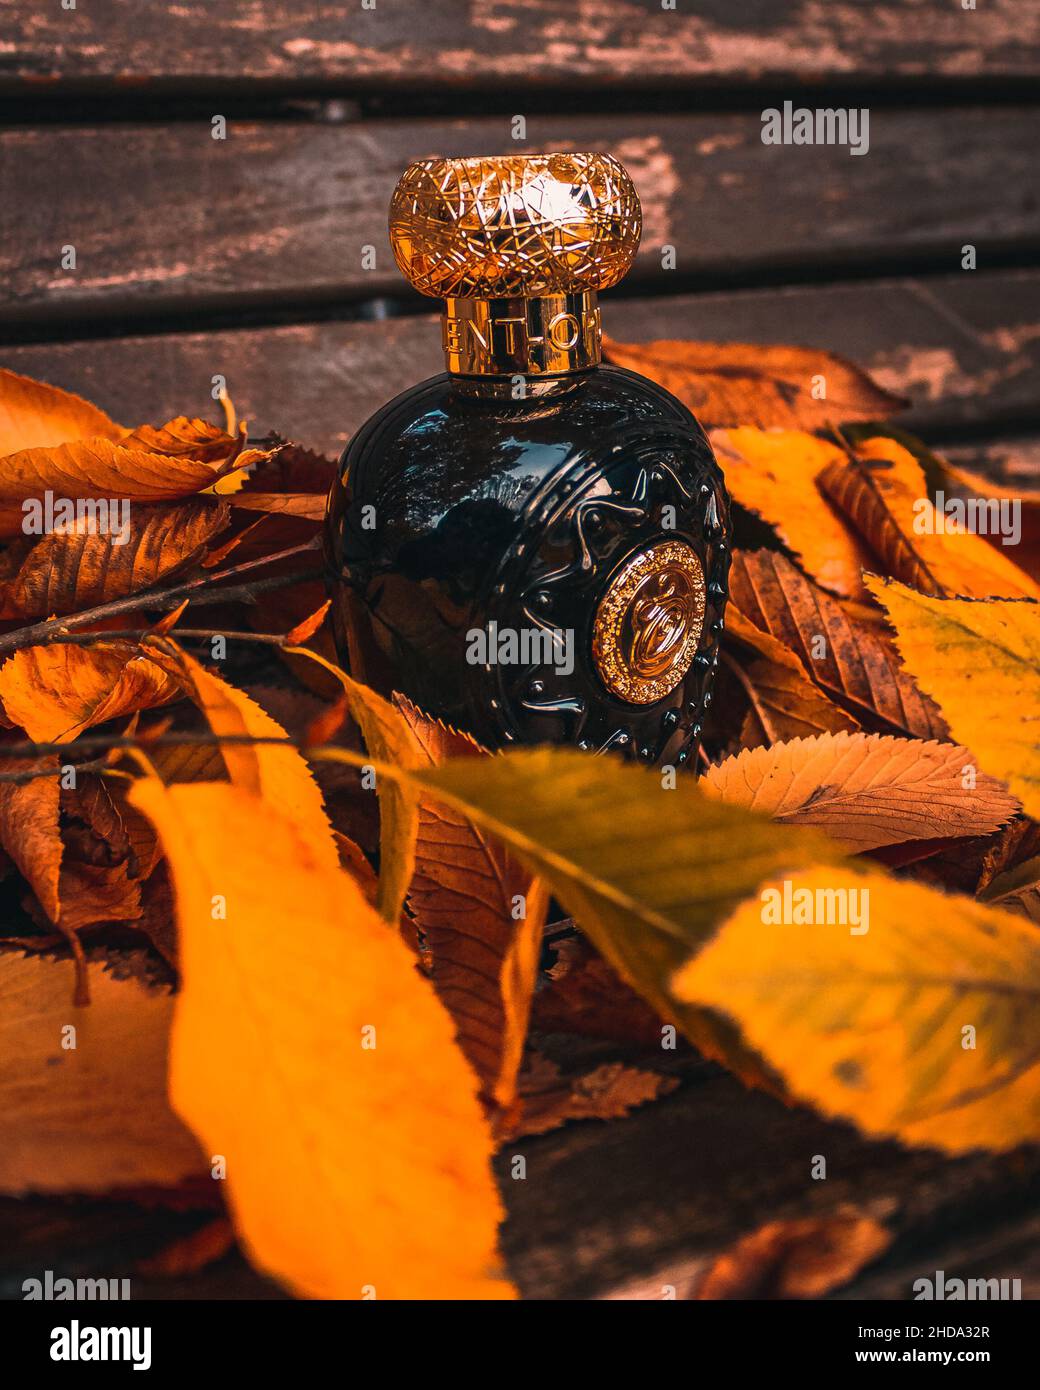 Arabic perfume immagini e fotografie stock ad alta risoluzione - Alamy